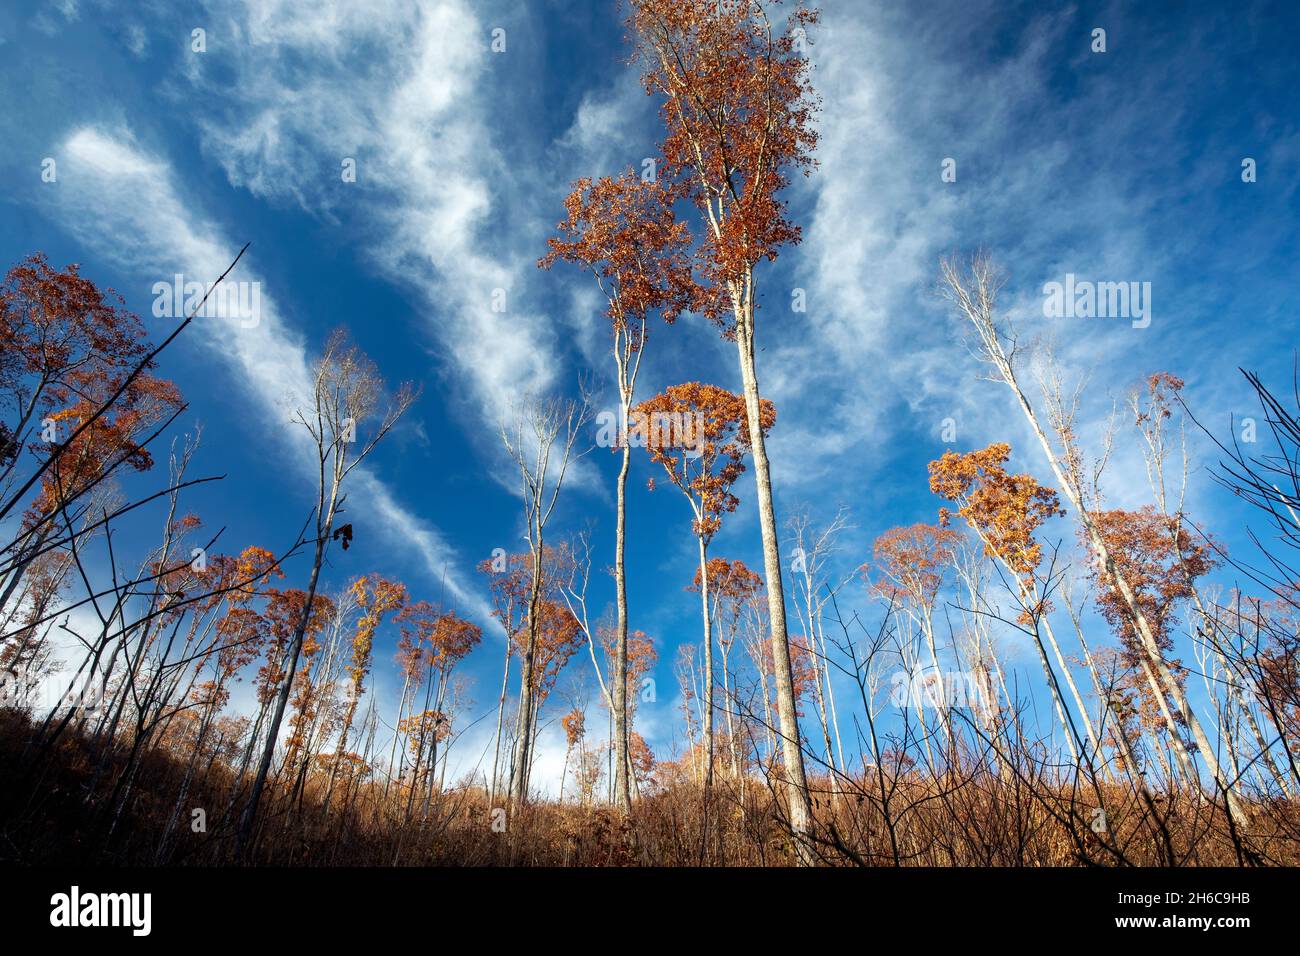 Bosquet d'arbres restant après l'abattage - Forêt nationale de Nantahala, Caroline du Nord, États-Unis Banque D'Images